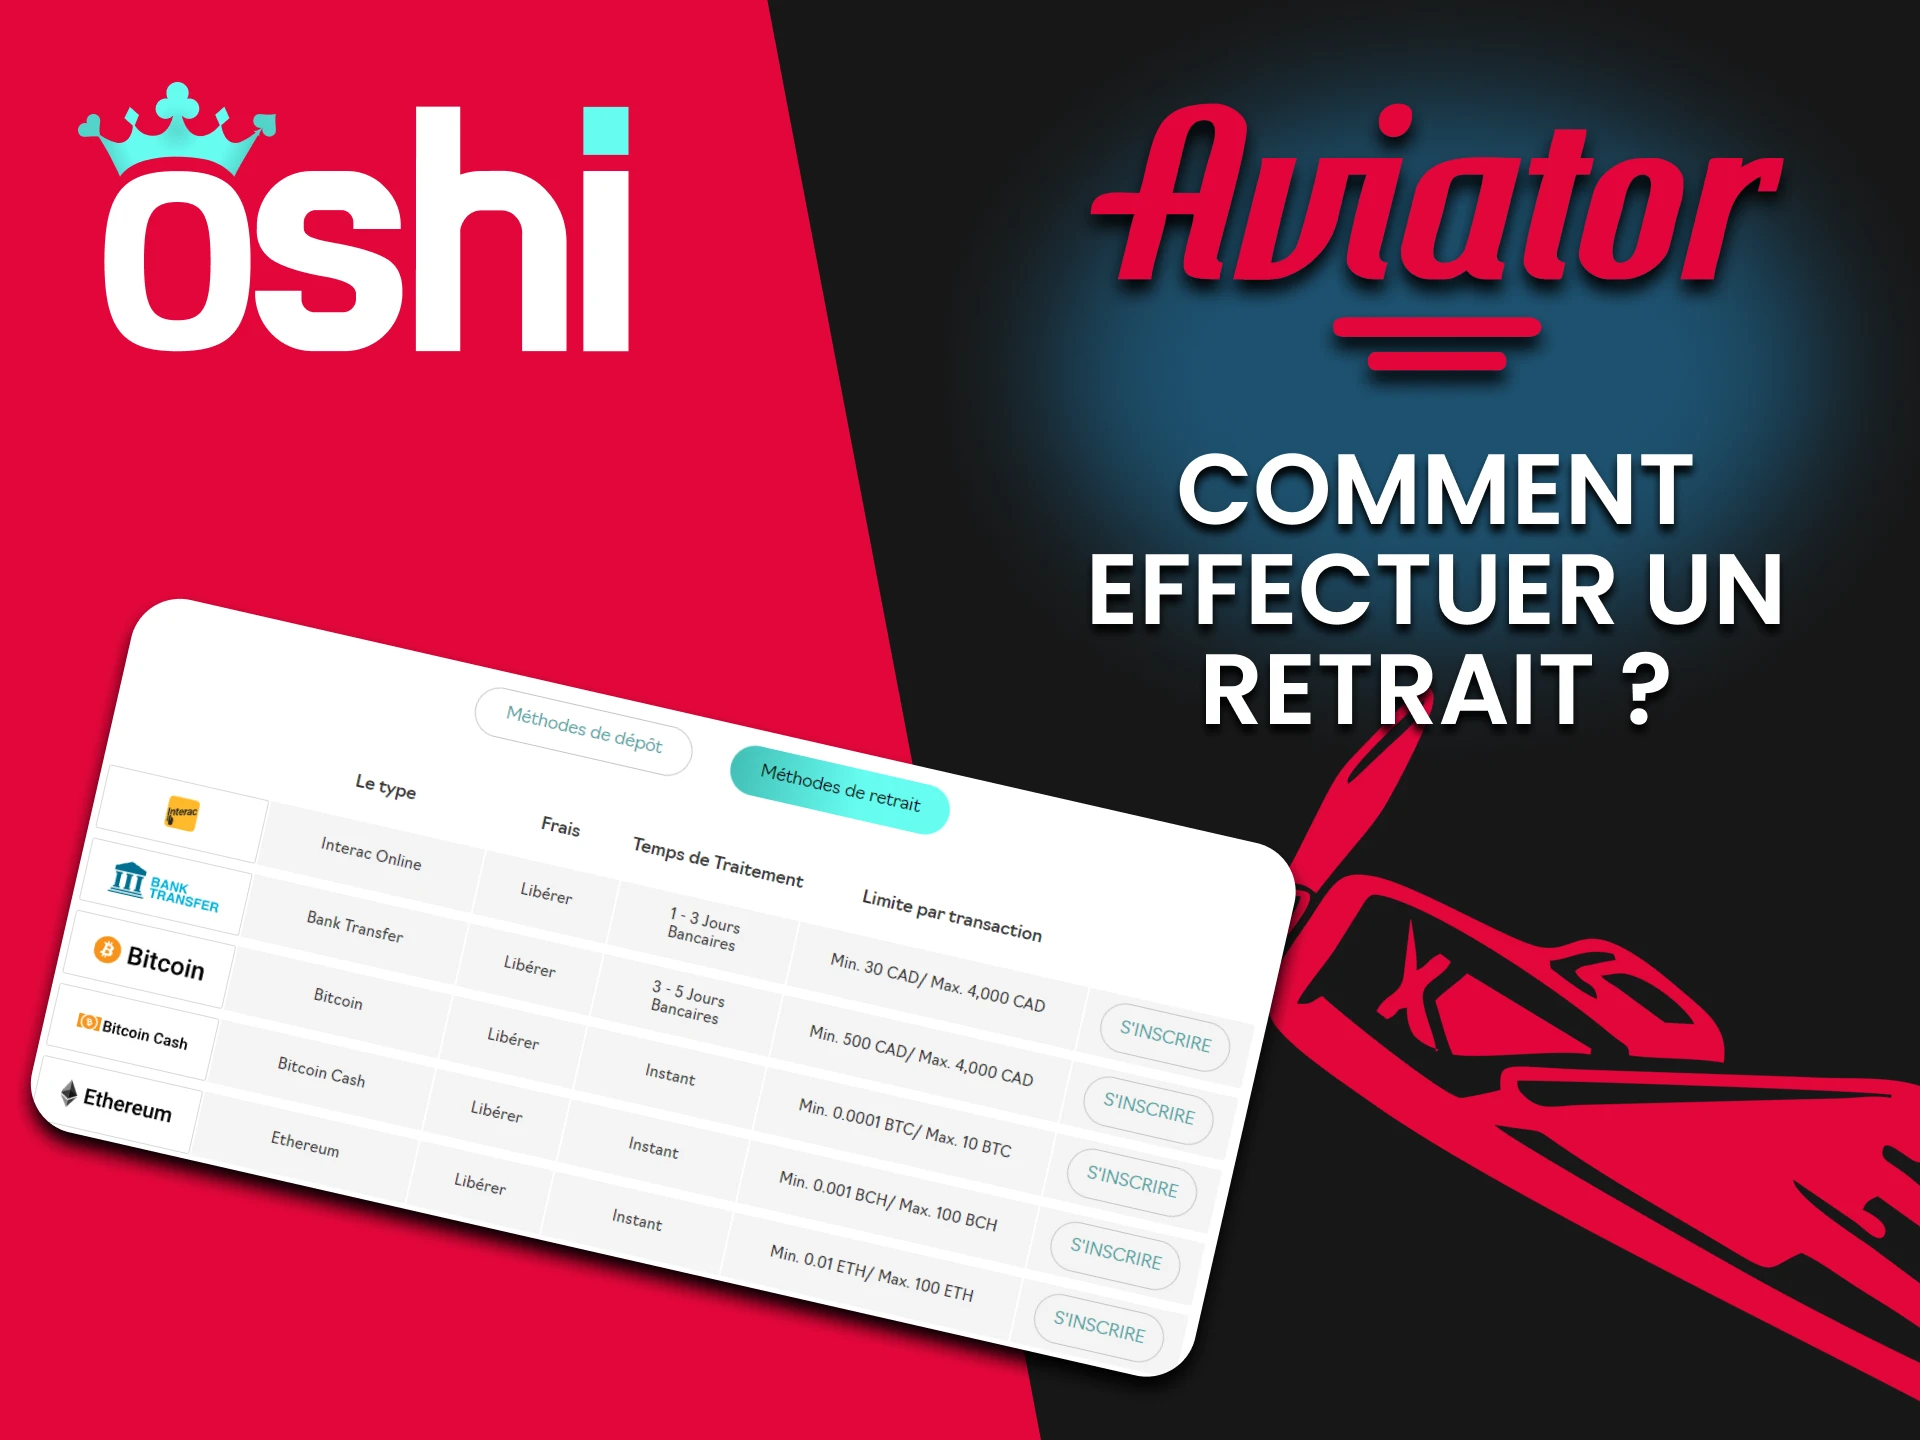 Nous vous parlerons de la méthode de retrait pour Aviator sur Oshi Casino.